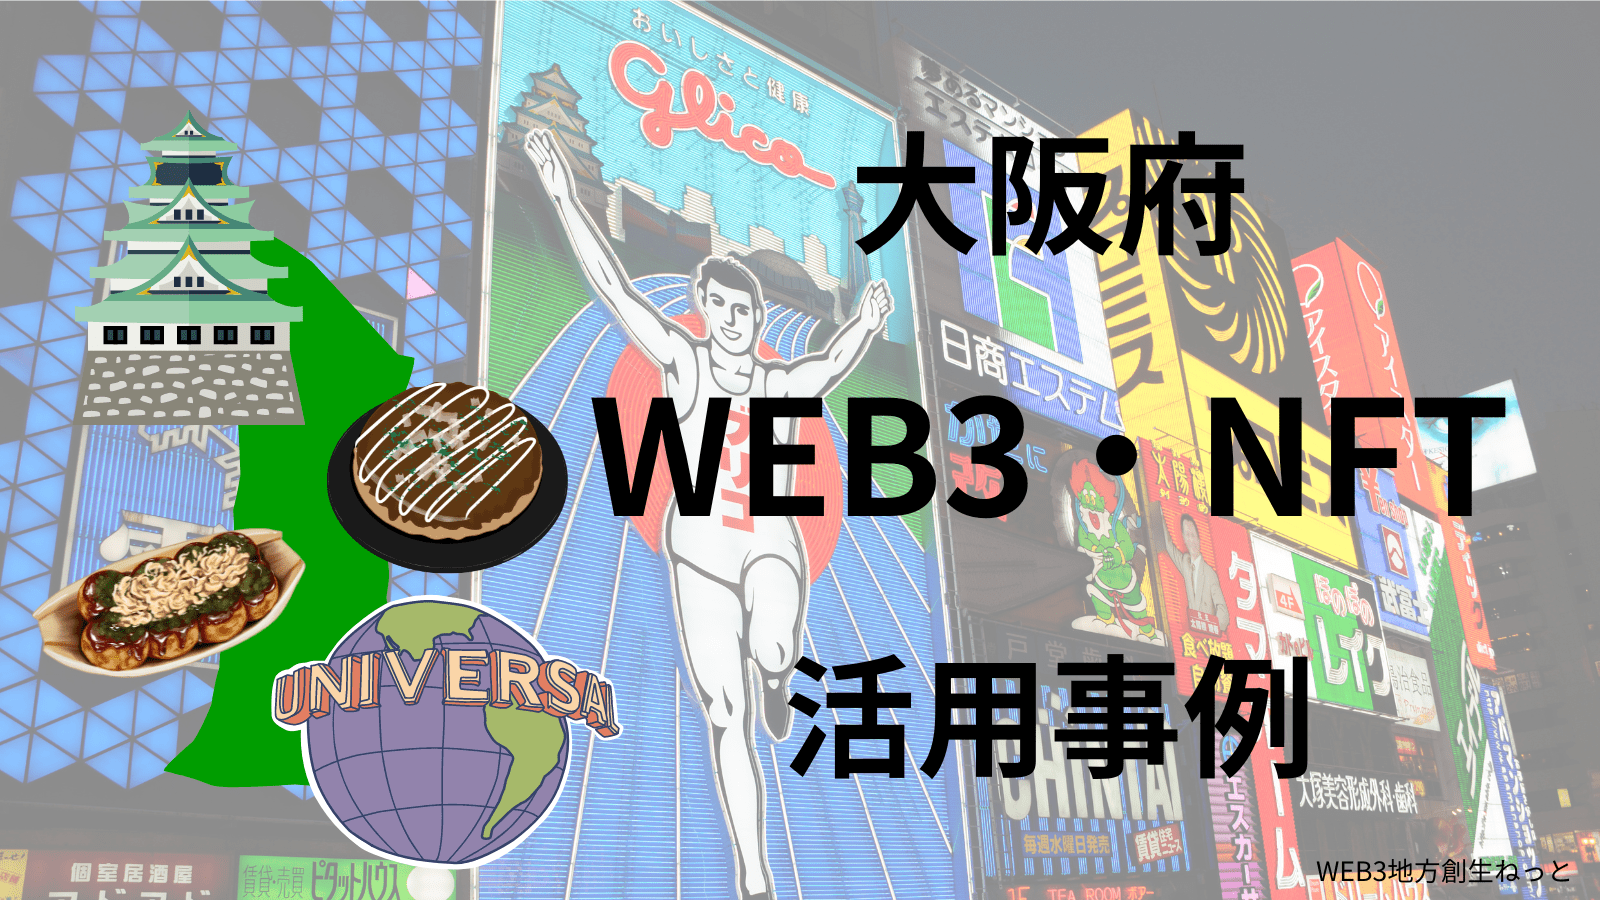 大阪府 Web3 地方創生